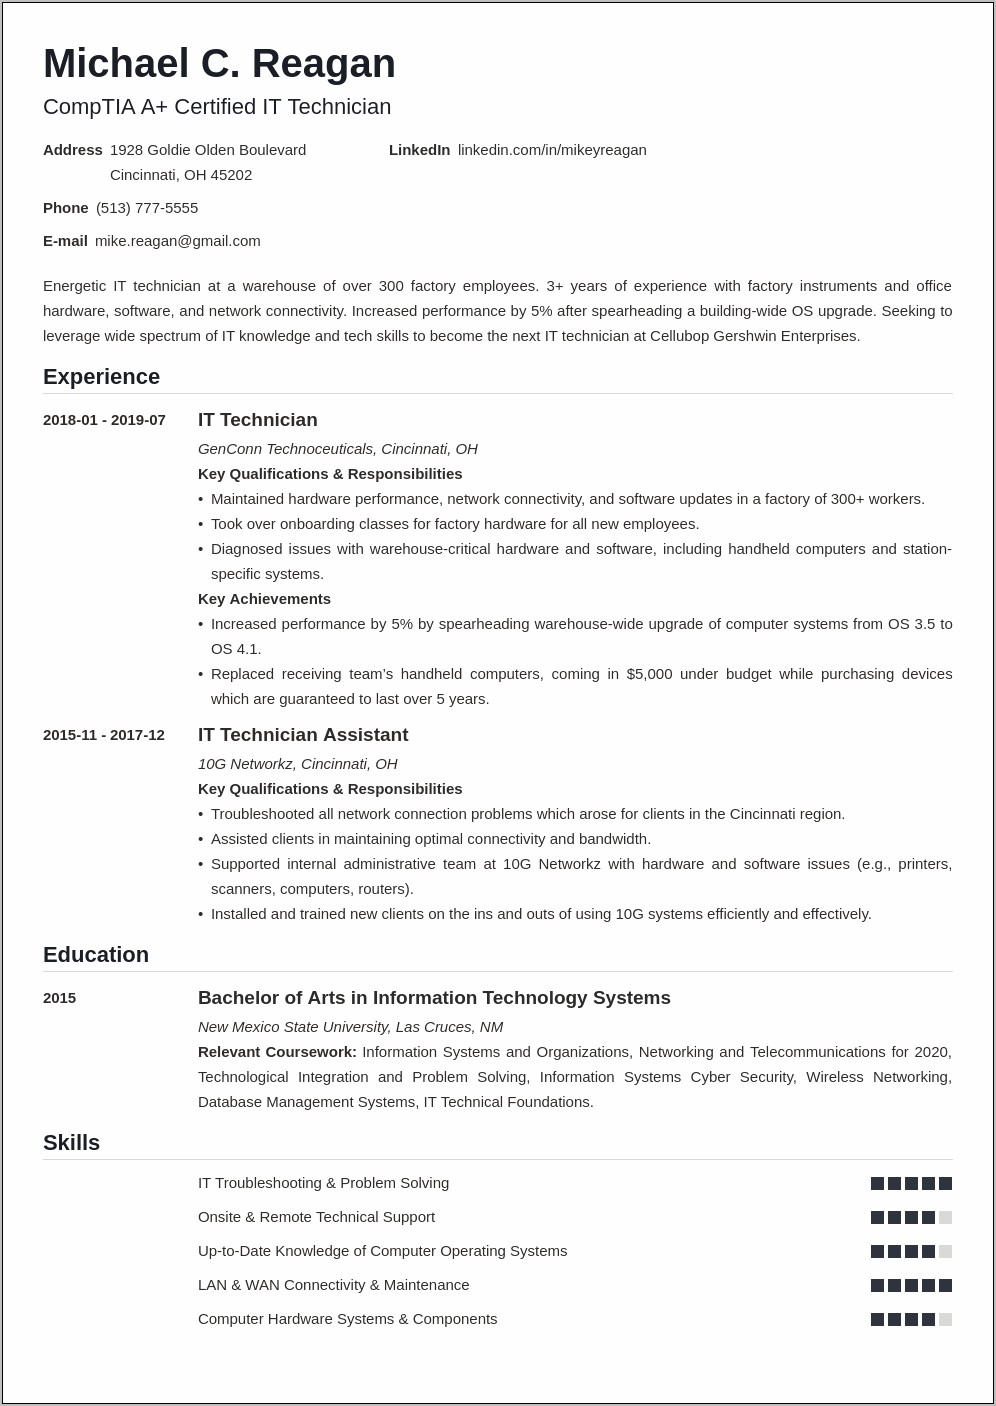 Computer Technician Job Description Resume